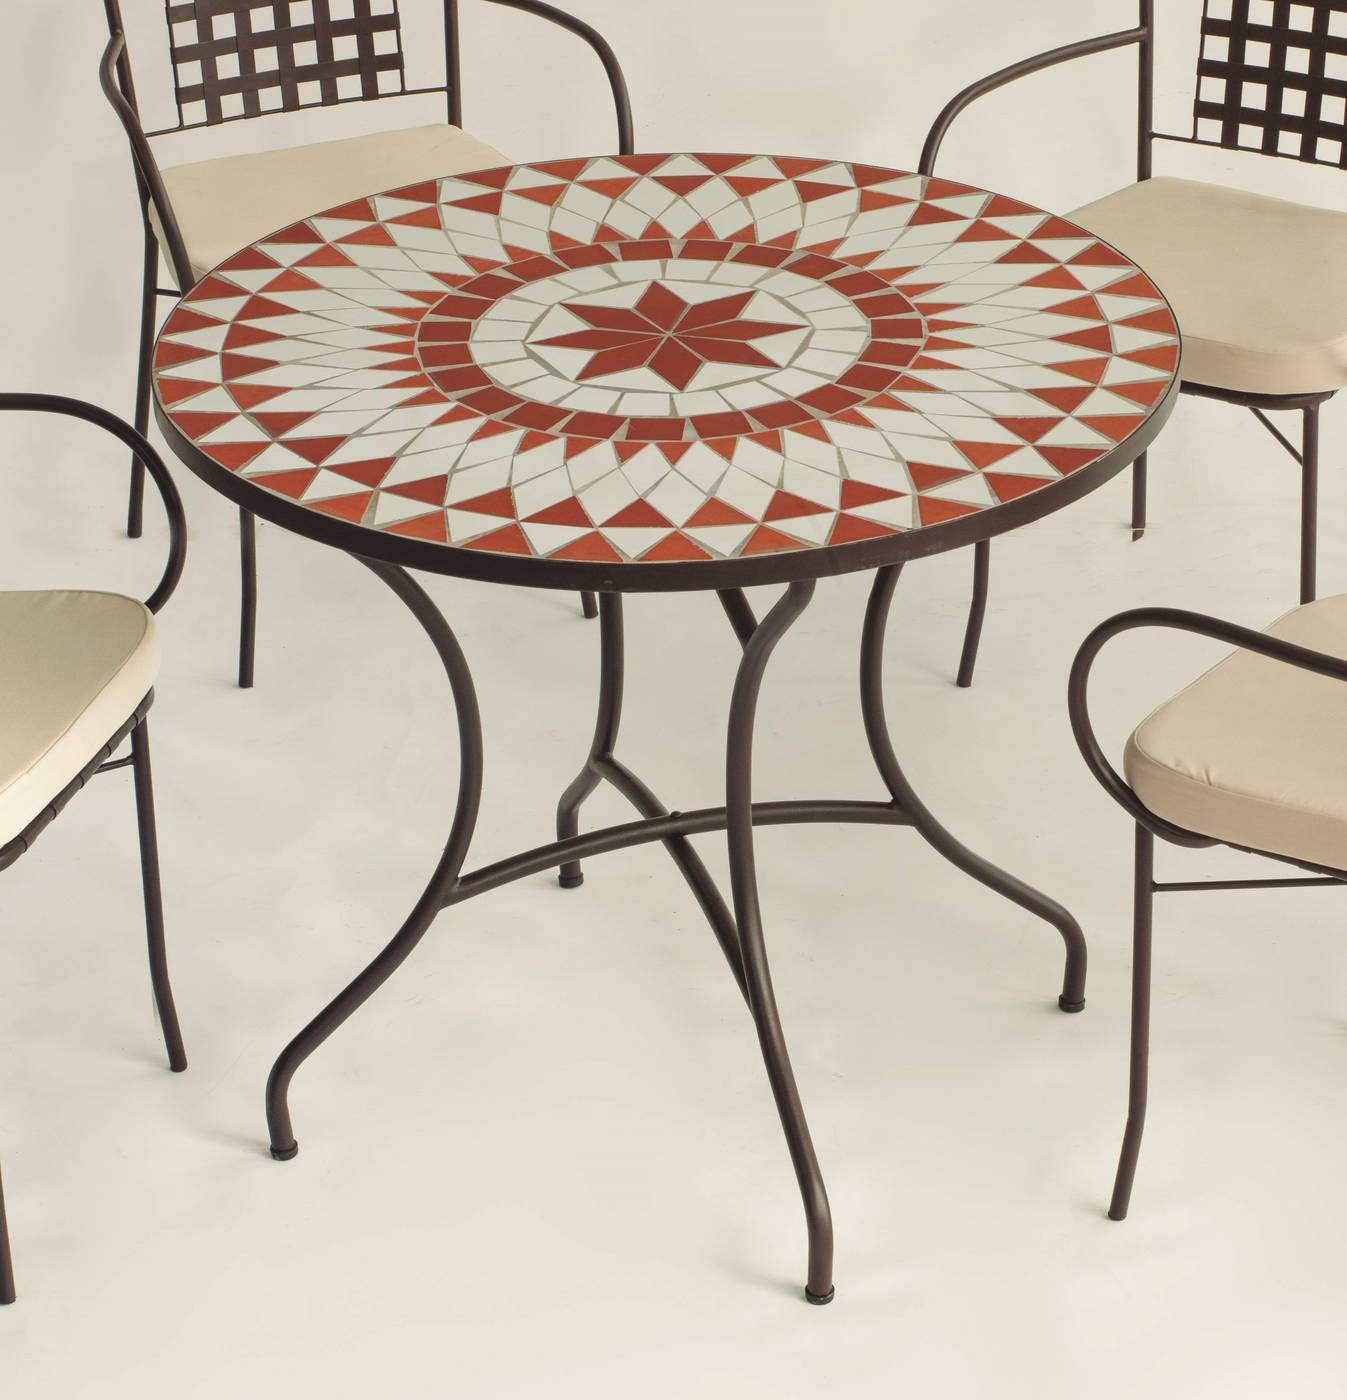 Conjunto Mosaico Neypal90-Bergamo - Conjunto de forja color marrón: mesa con tablero mosaico de 90 cm + 4 sillones de ratán sintético con cojines.